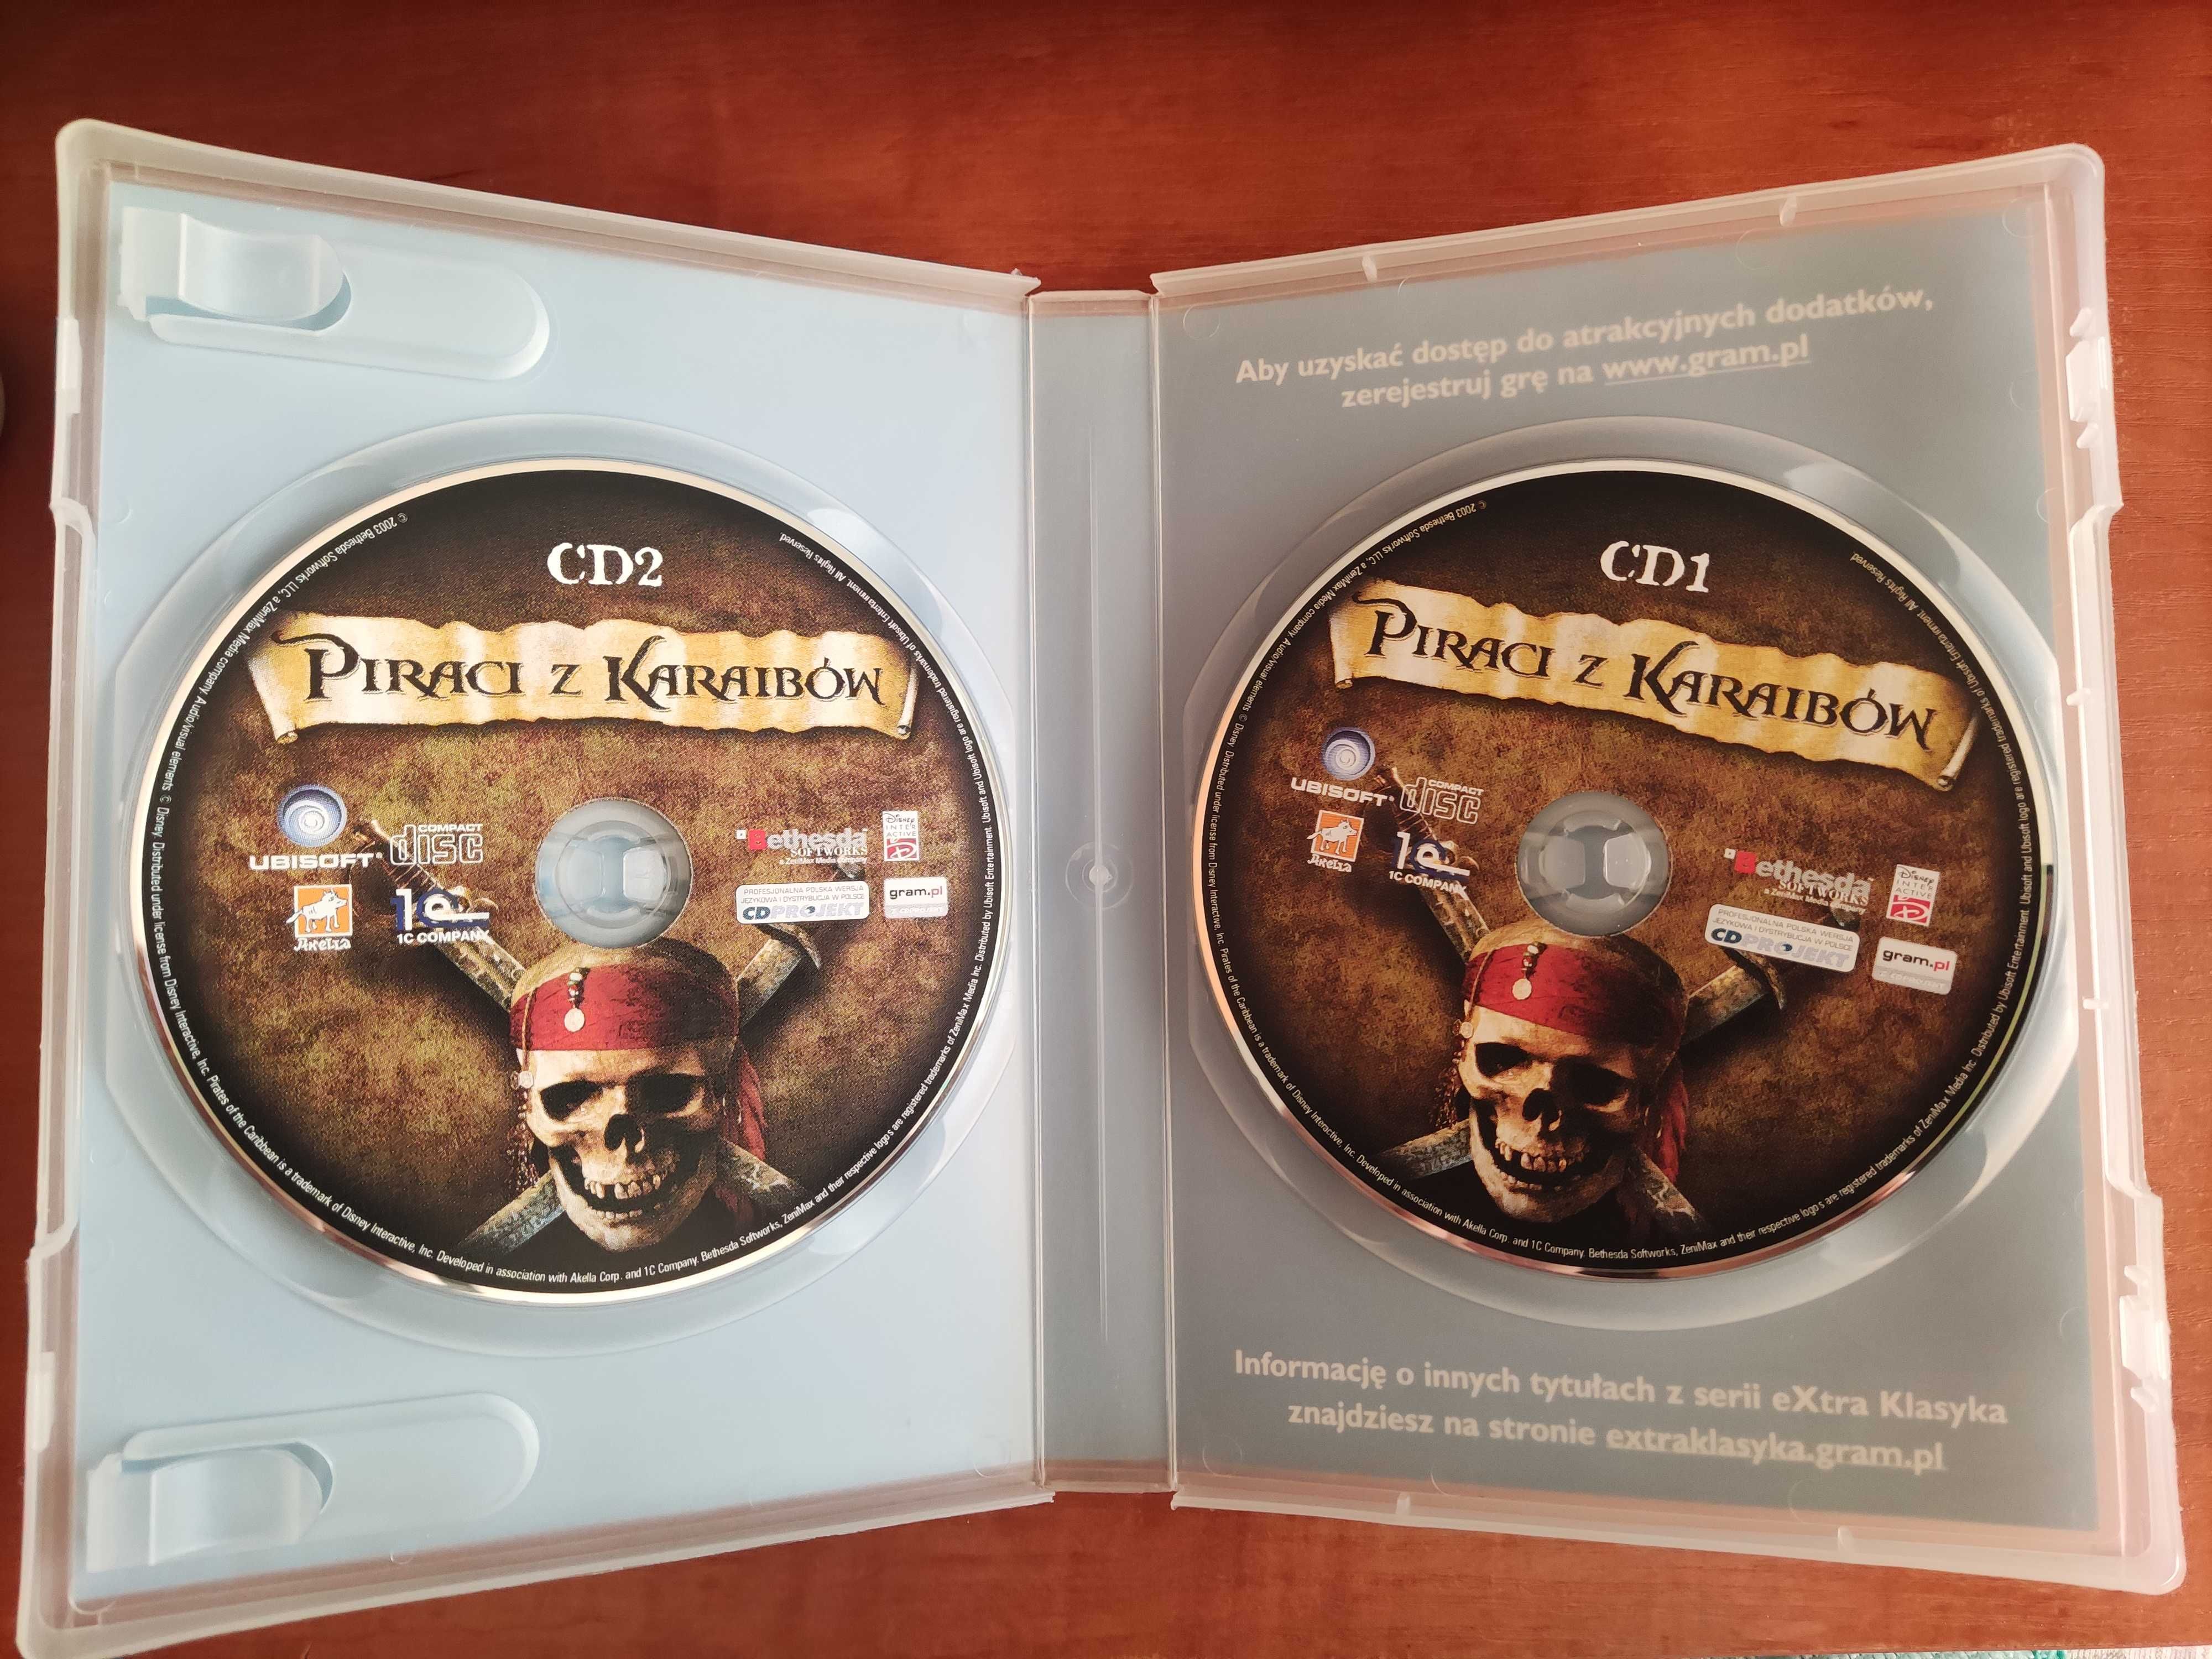 Piraci z Karaibów 2003 Extra Klasyka PC CD